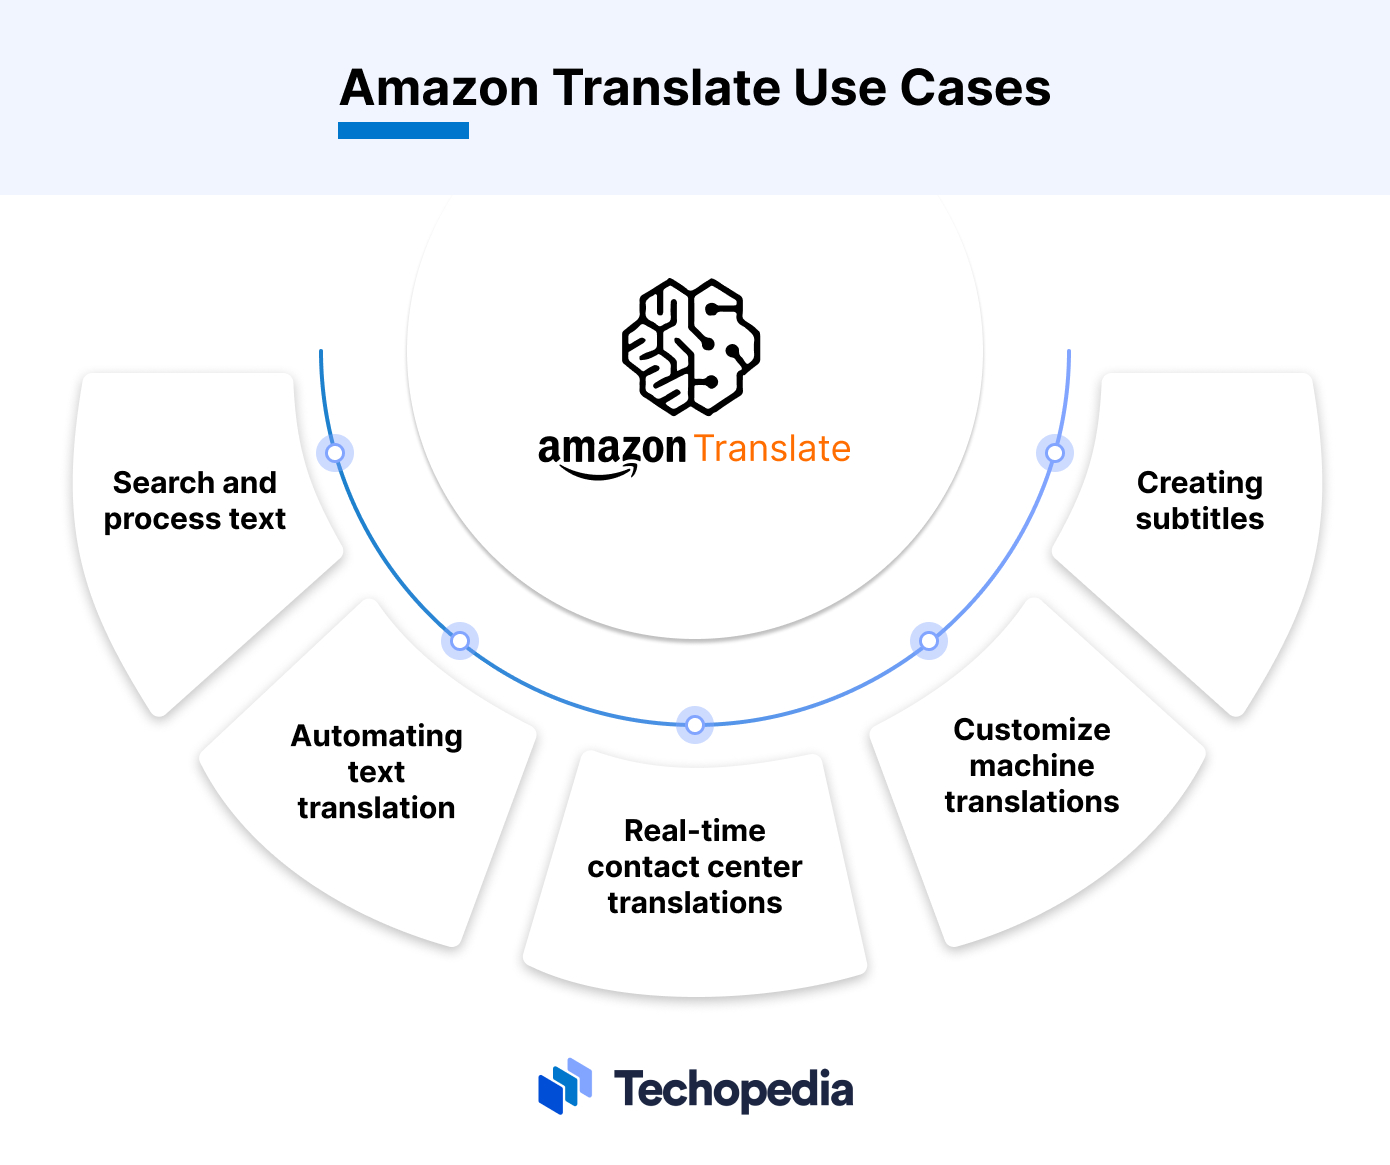 Amazon Translate Use Cases